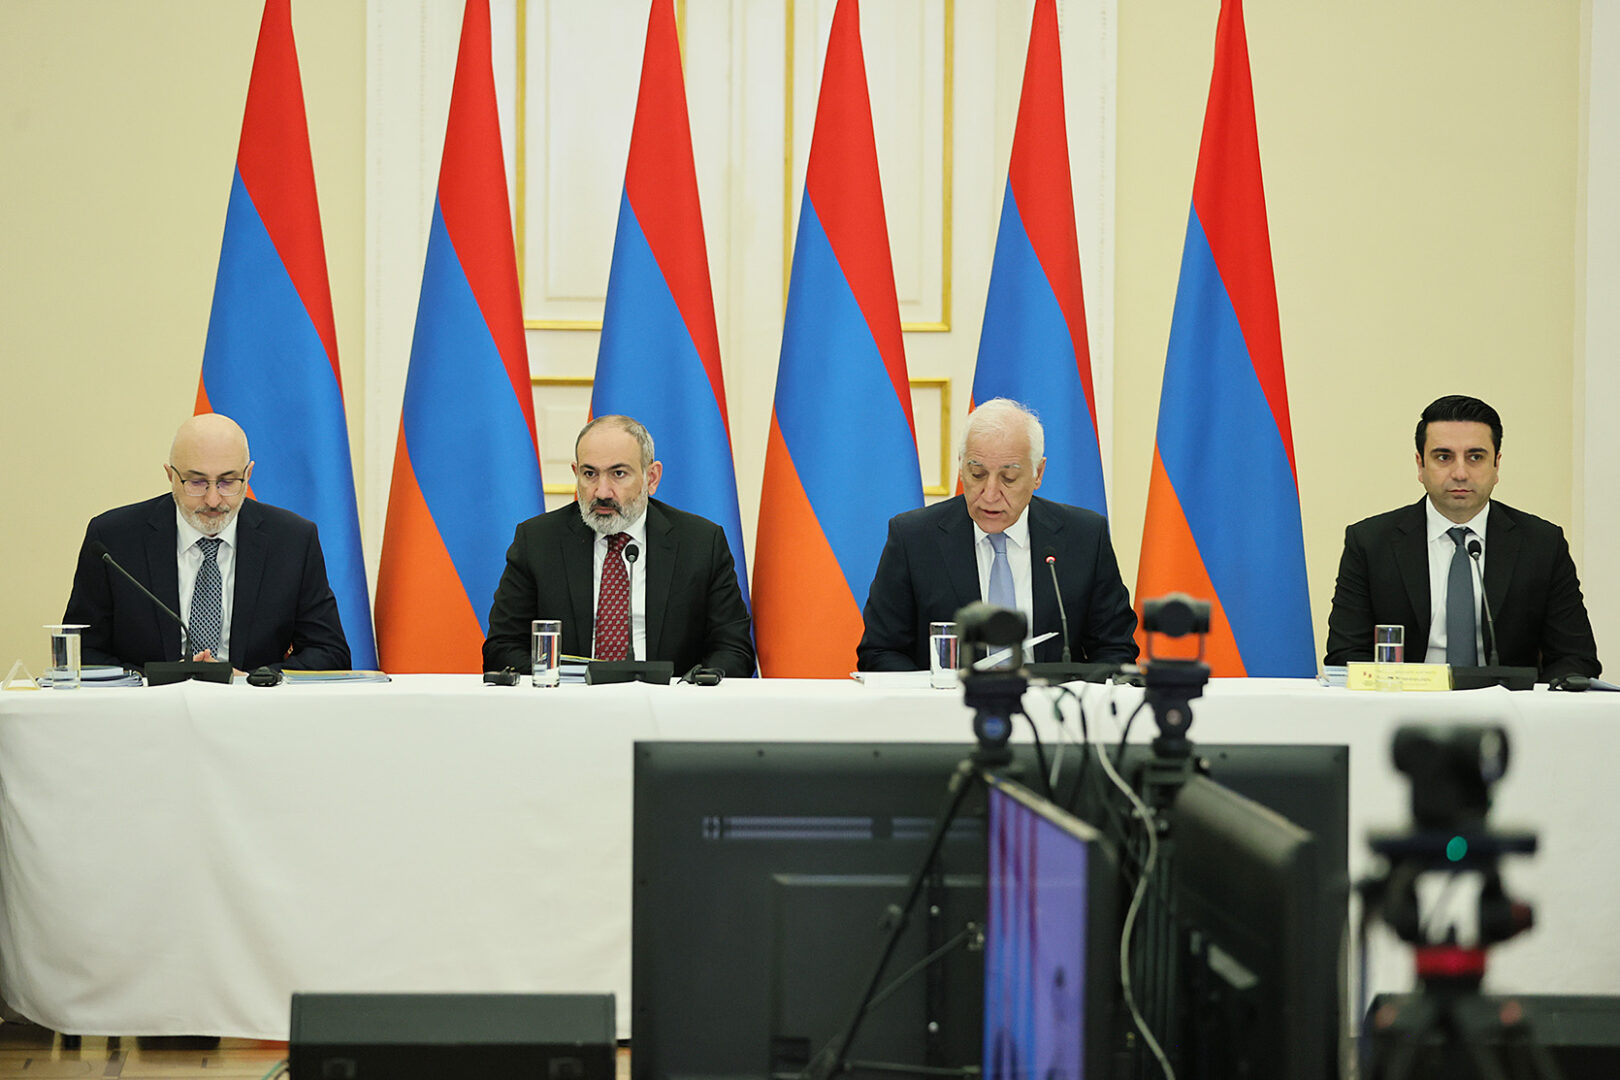 ՀՀ վարչապետը մասնակցել է «Հայաստան» համահայկական հիմնադրամի հոգաբարձուների խորհրդի 33-րդ նիստին